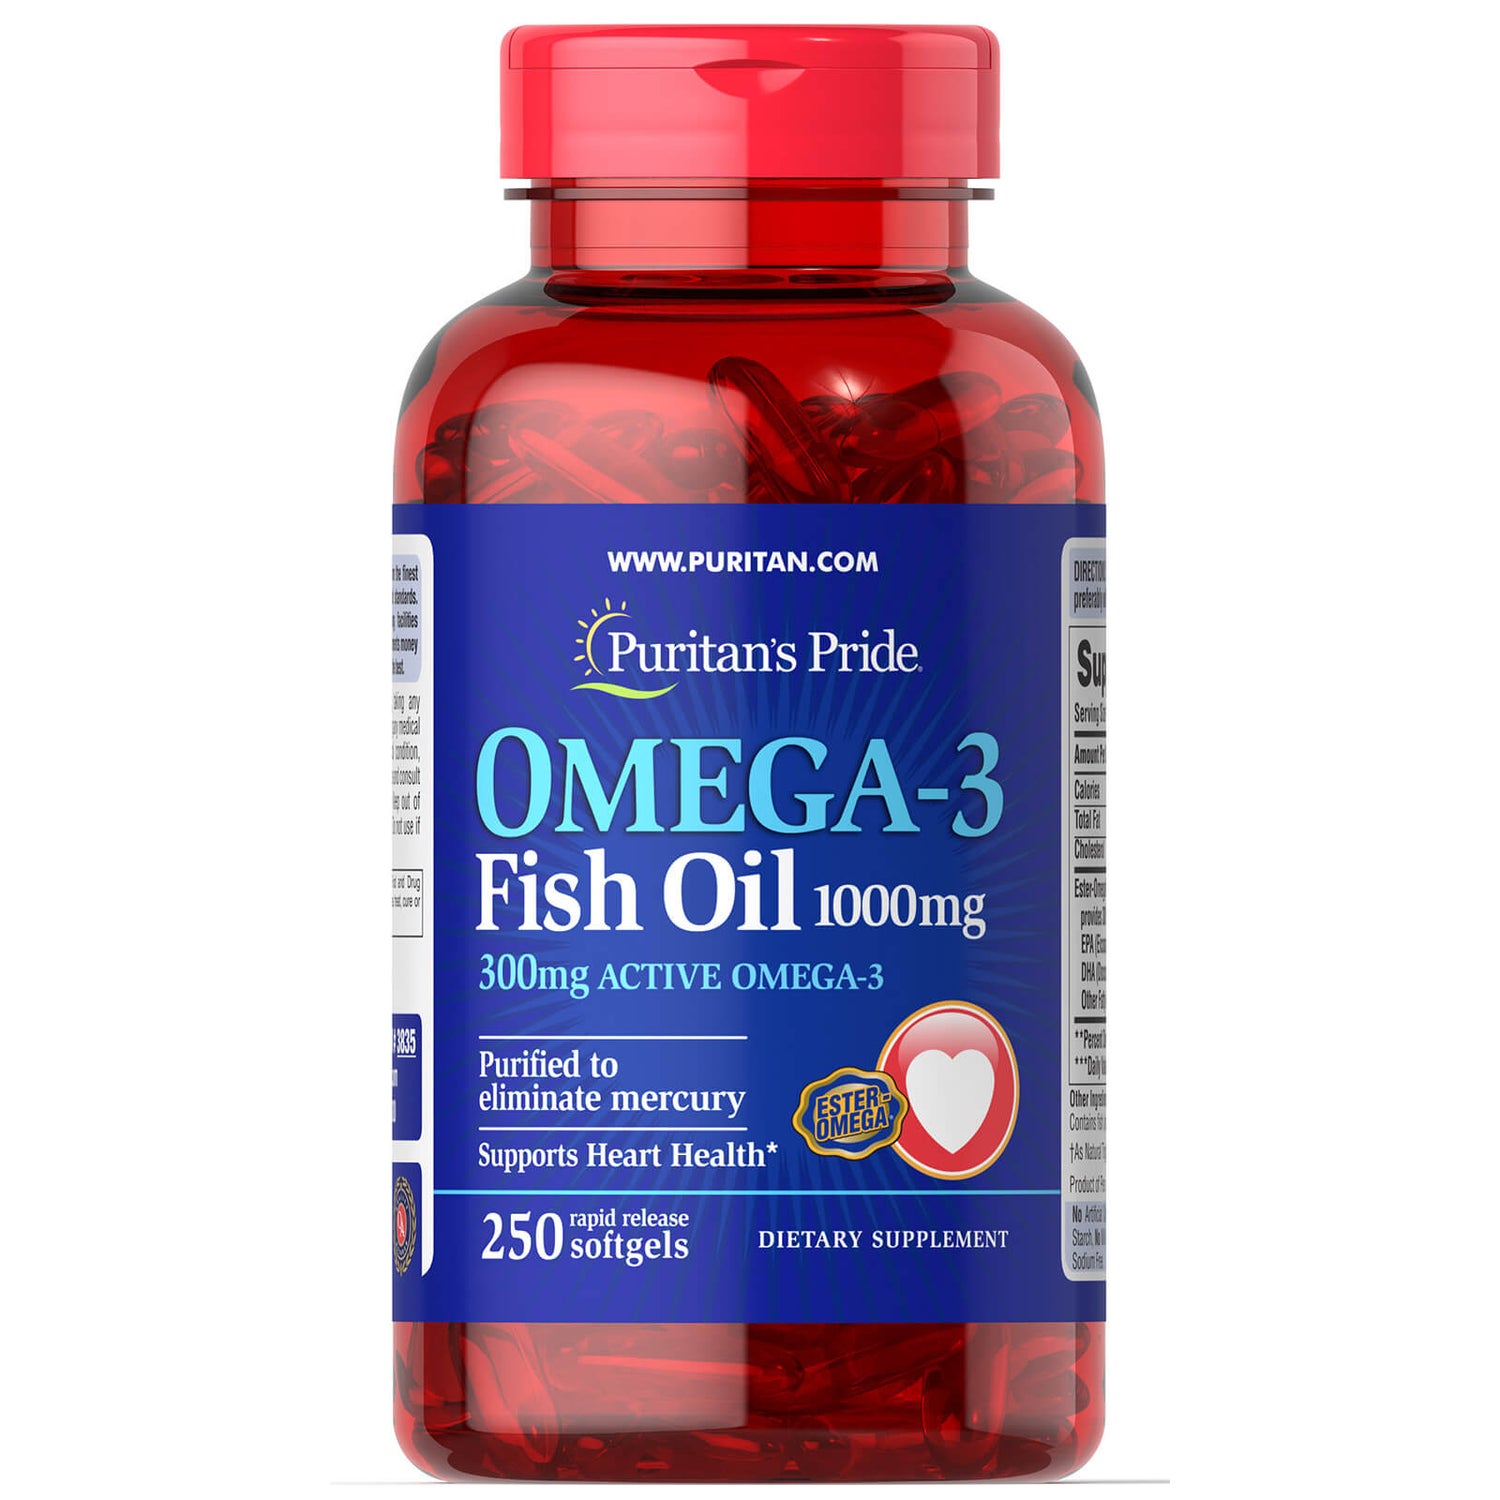 Puritan's Pride Omega-3 Fish Oil 1000mg - 250 Softgels